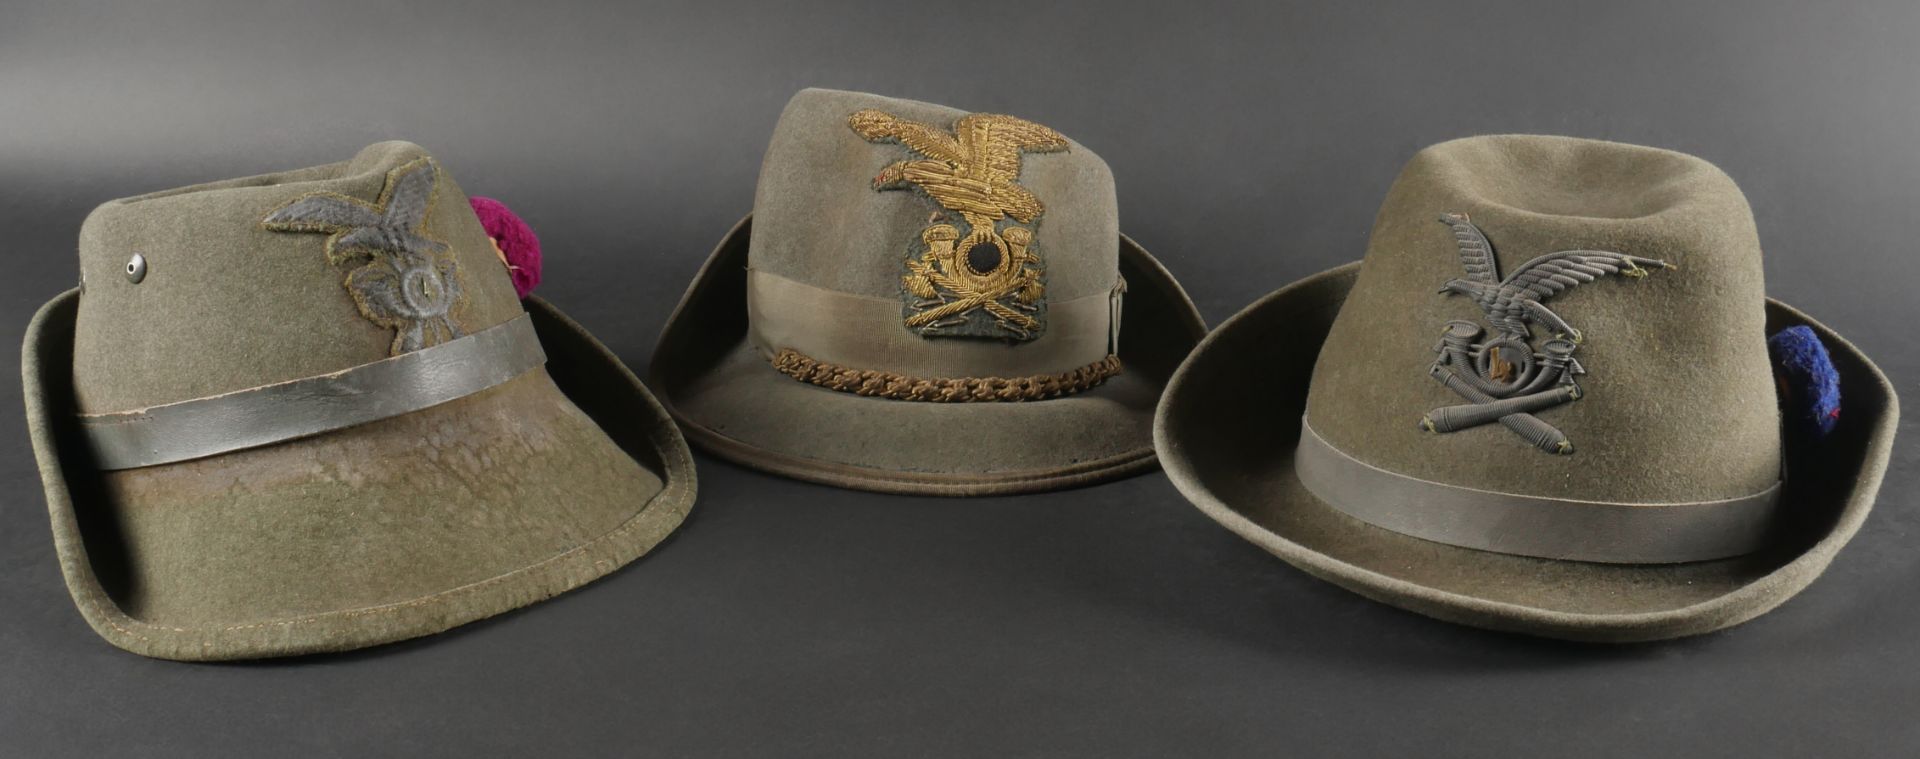 Trois chapeaux des troupes de Montagne. Three mountain troop hats.